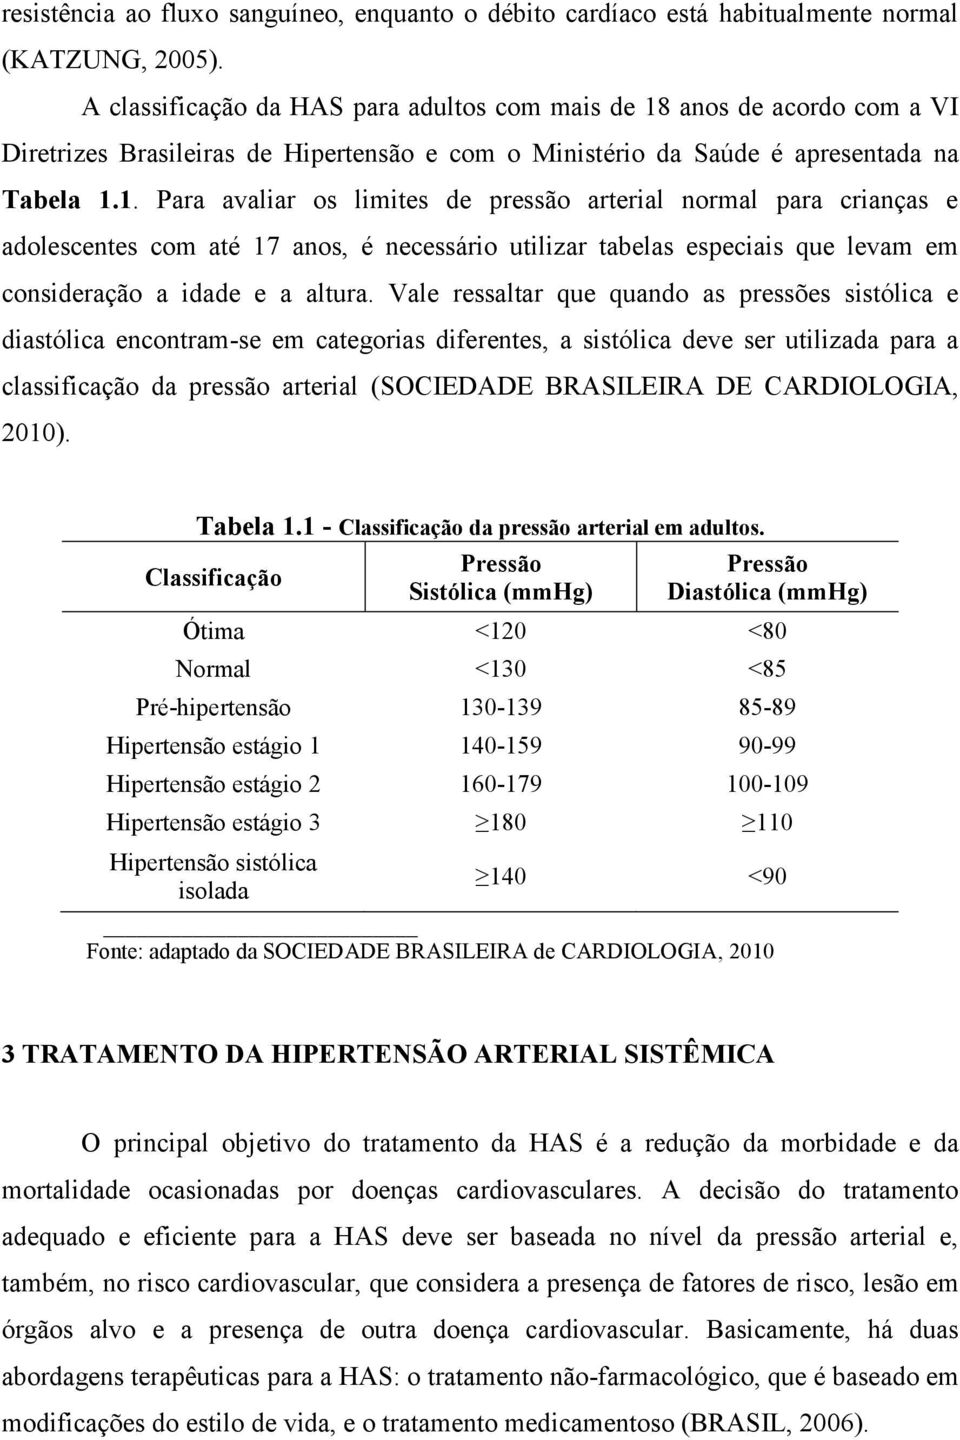 anos de acordo com a VI Diretrizes Brasileiras de Hipertensão e com o Ministério da Saúde é apresentada na Tabela 1.